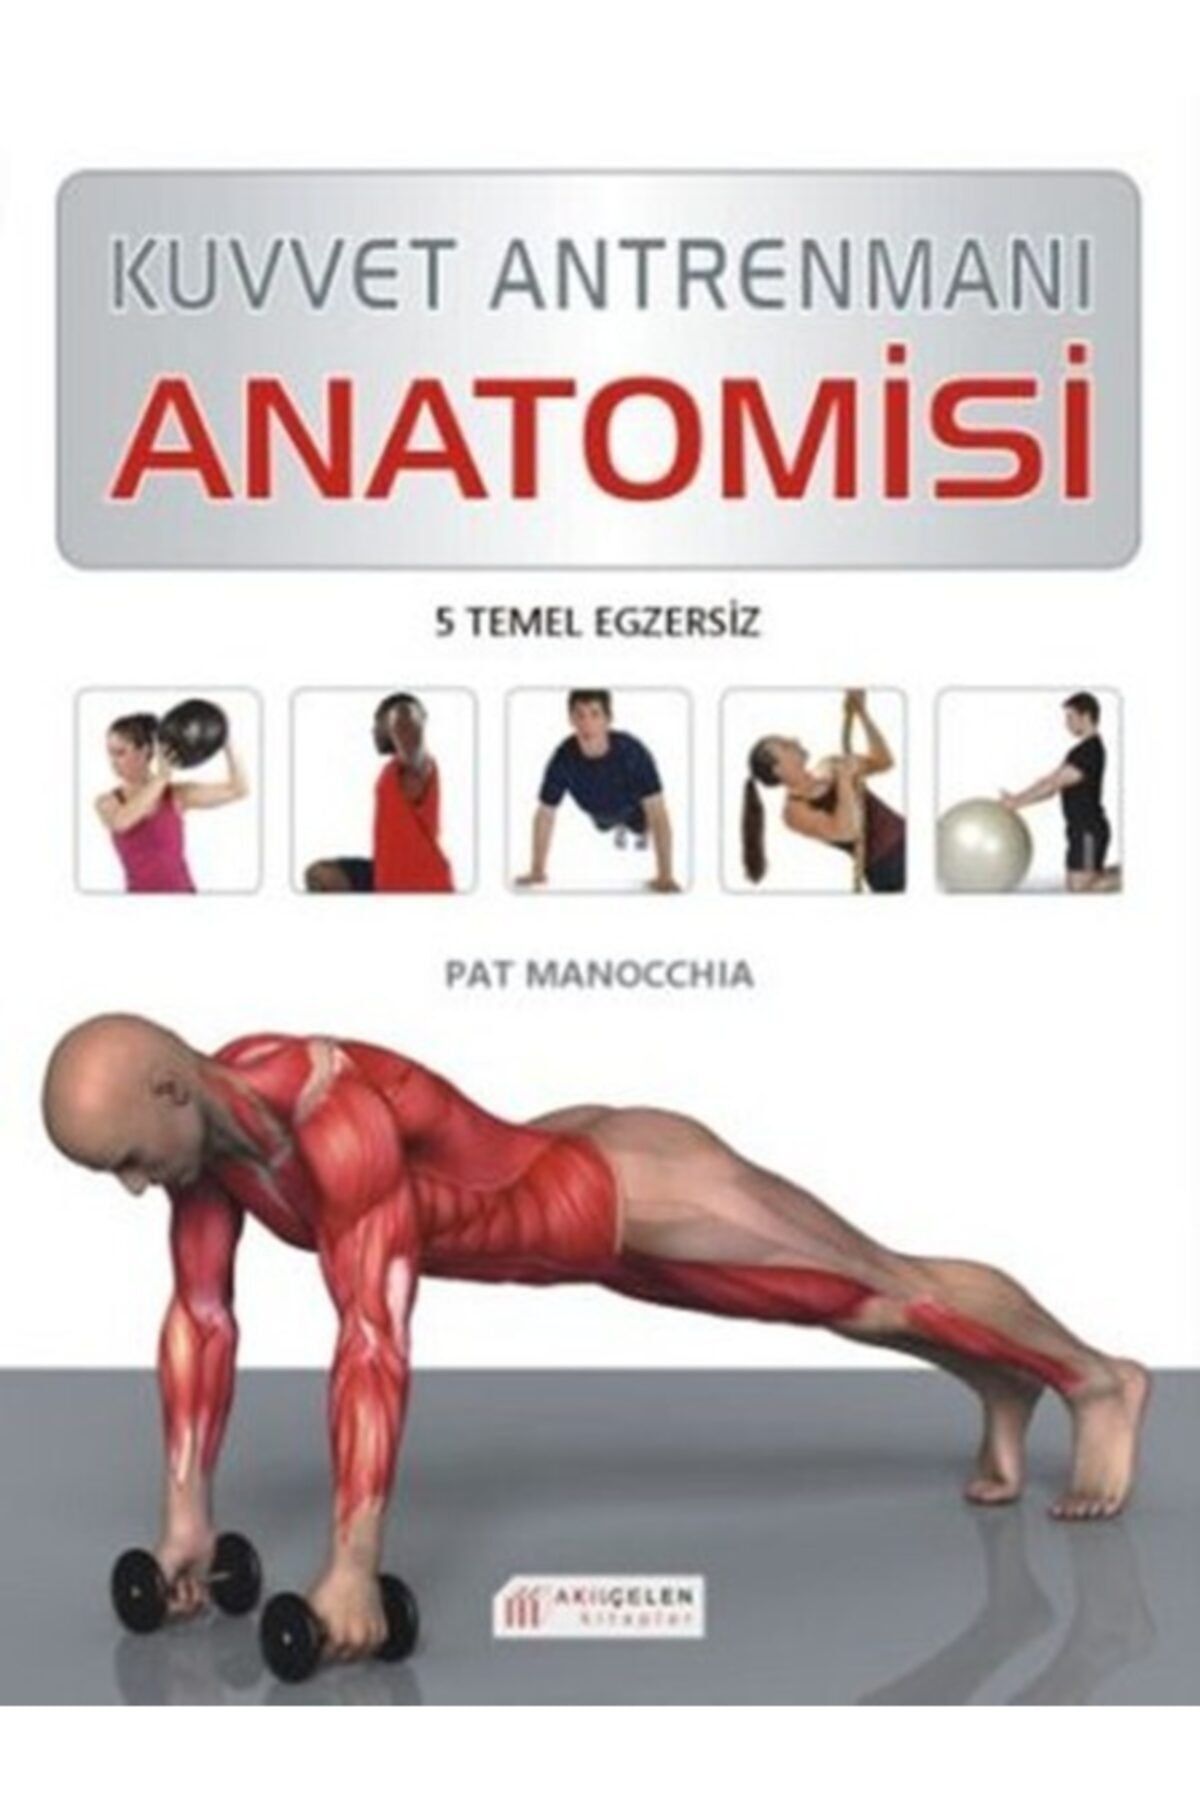 Akıl Çelen Kitaplar Kuvvet Antrenmanı Anatomisi - - Pat Manocchia Kitabı